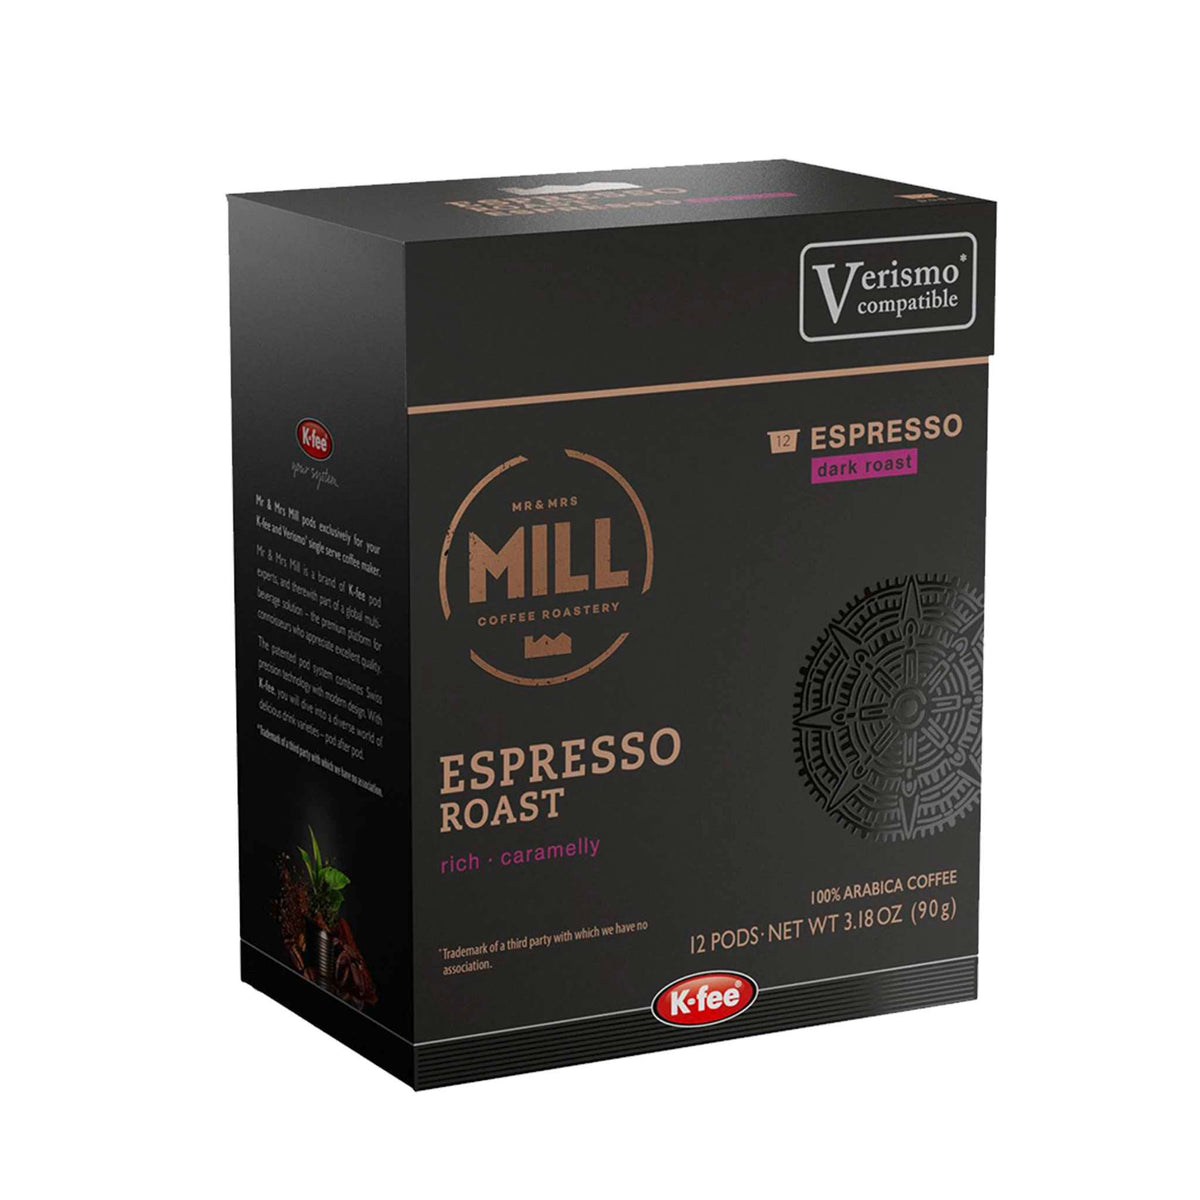 Shop K-fee® Espresso Capsules & Pods – K-fee USA